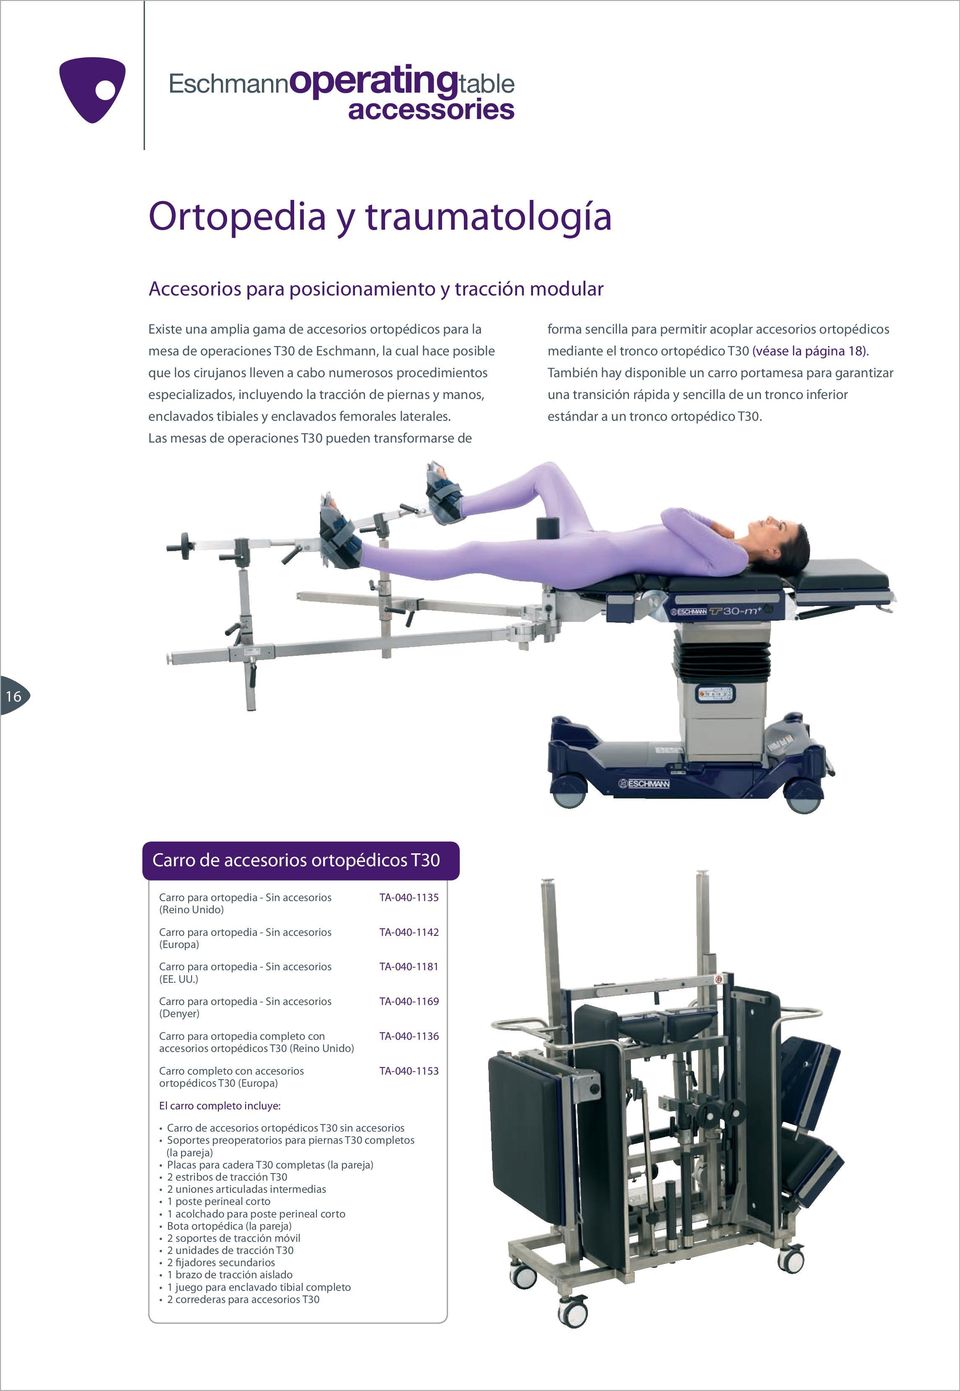 Las mesas de operaciones T30 pueden transformarse de forma sencilla para permitir acoplar accesorios ortopédicos mediante el tronco ortopédico T30 (véase la página 18).